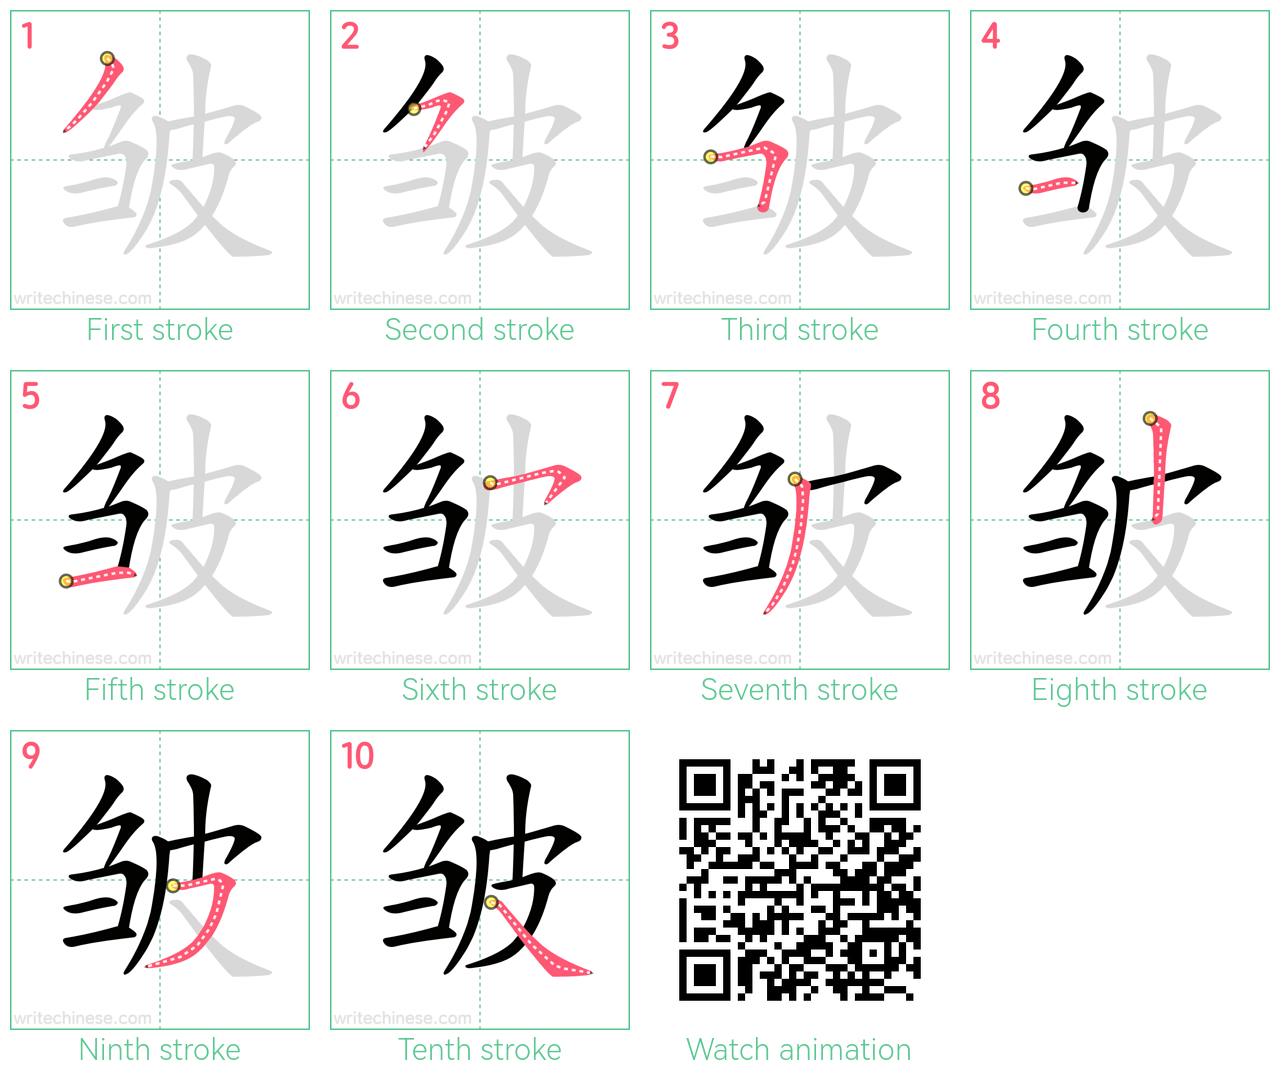 皱 step-by-step stroke order diagrams